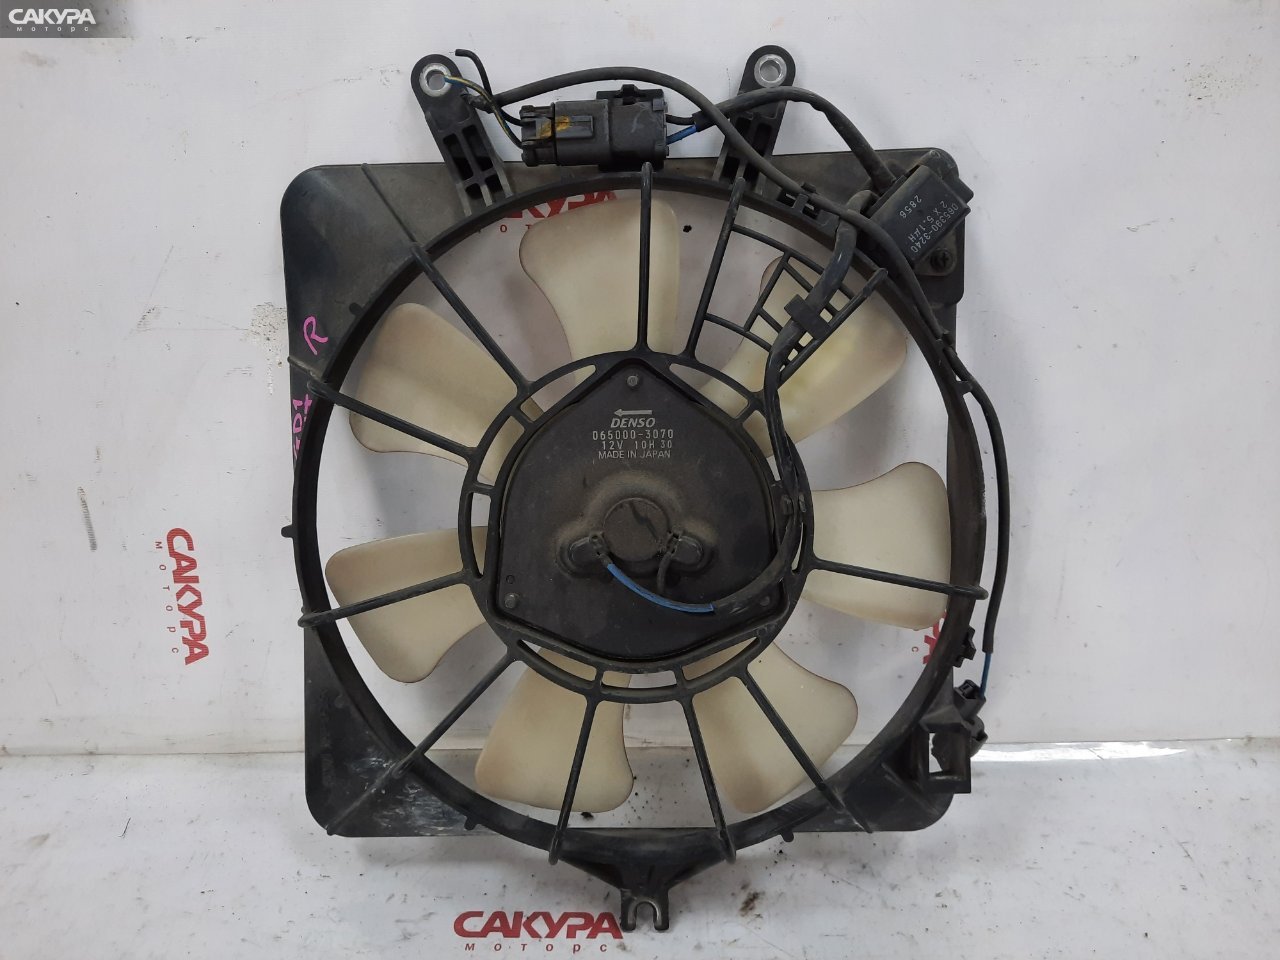 Вентилятор радиатора двигателя правый Honda FIT GD1 L13A: купить в Сакура Красноярск.